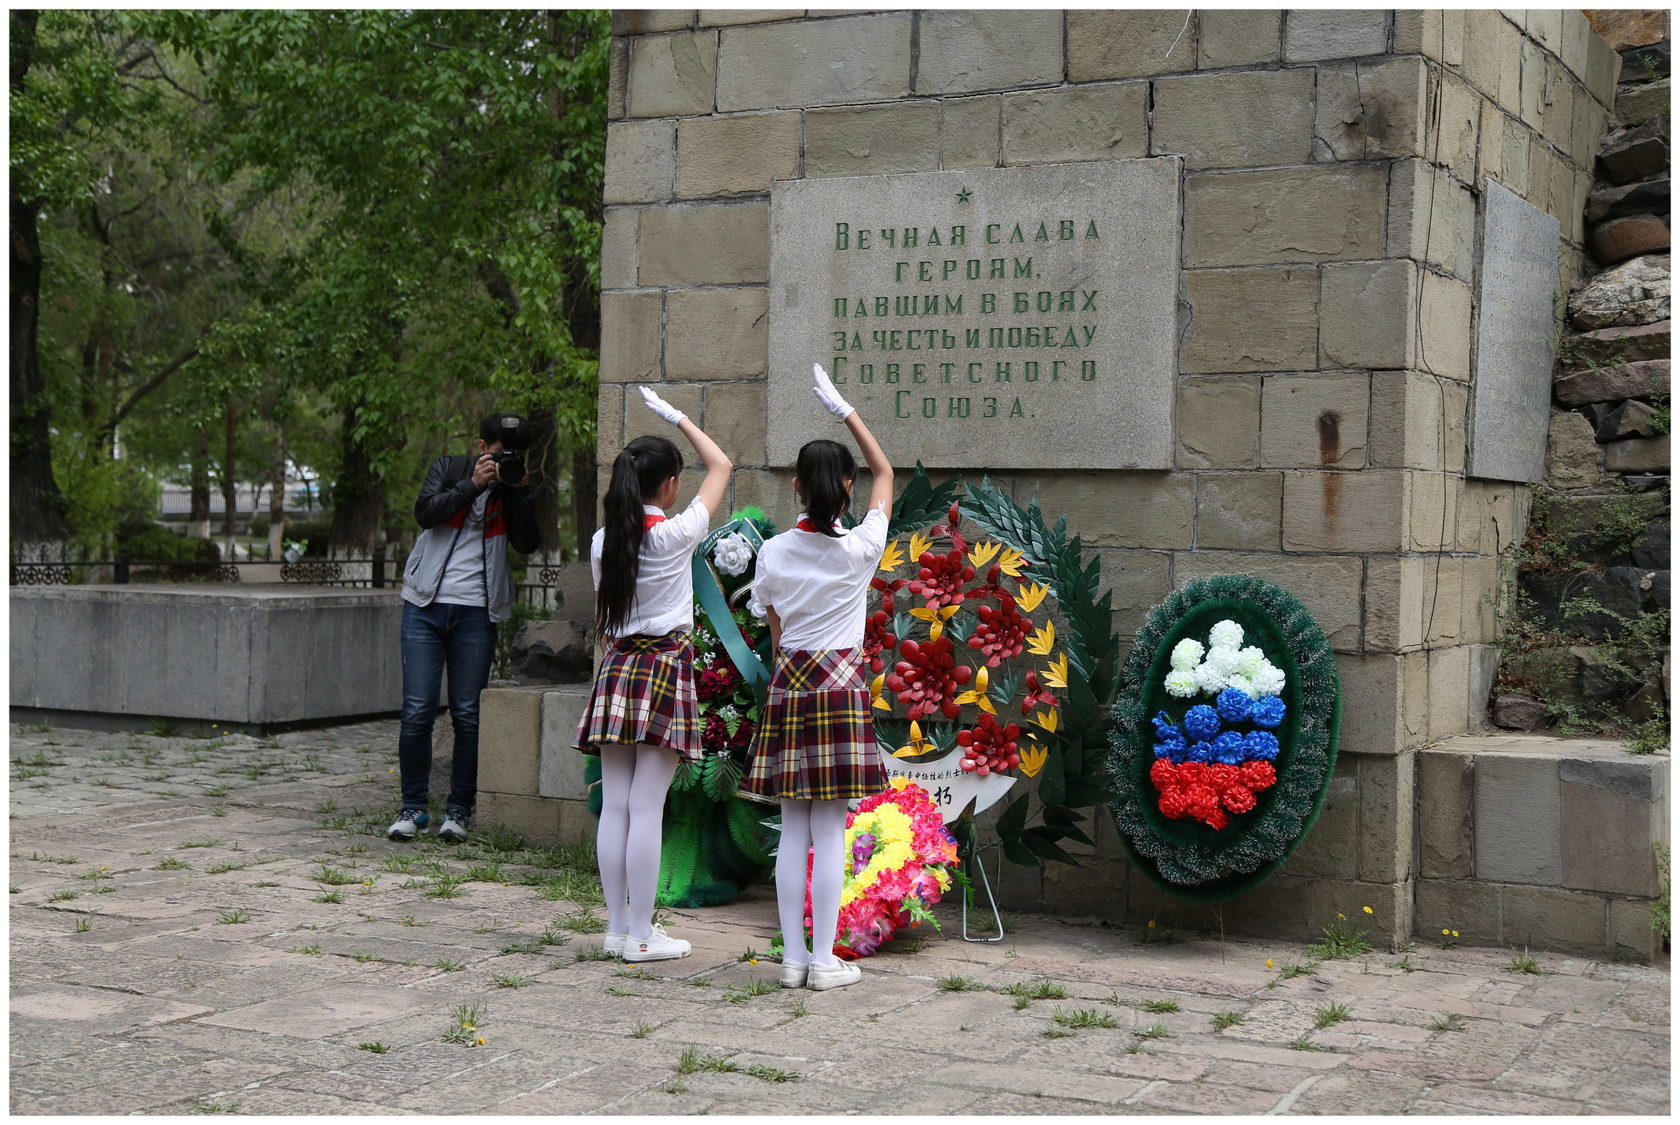 28 павших. Павшие герои. Парк павших героев красной армии. Завещание 28 павших героев. Павшим героям Таджикистана.